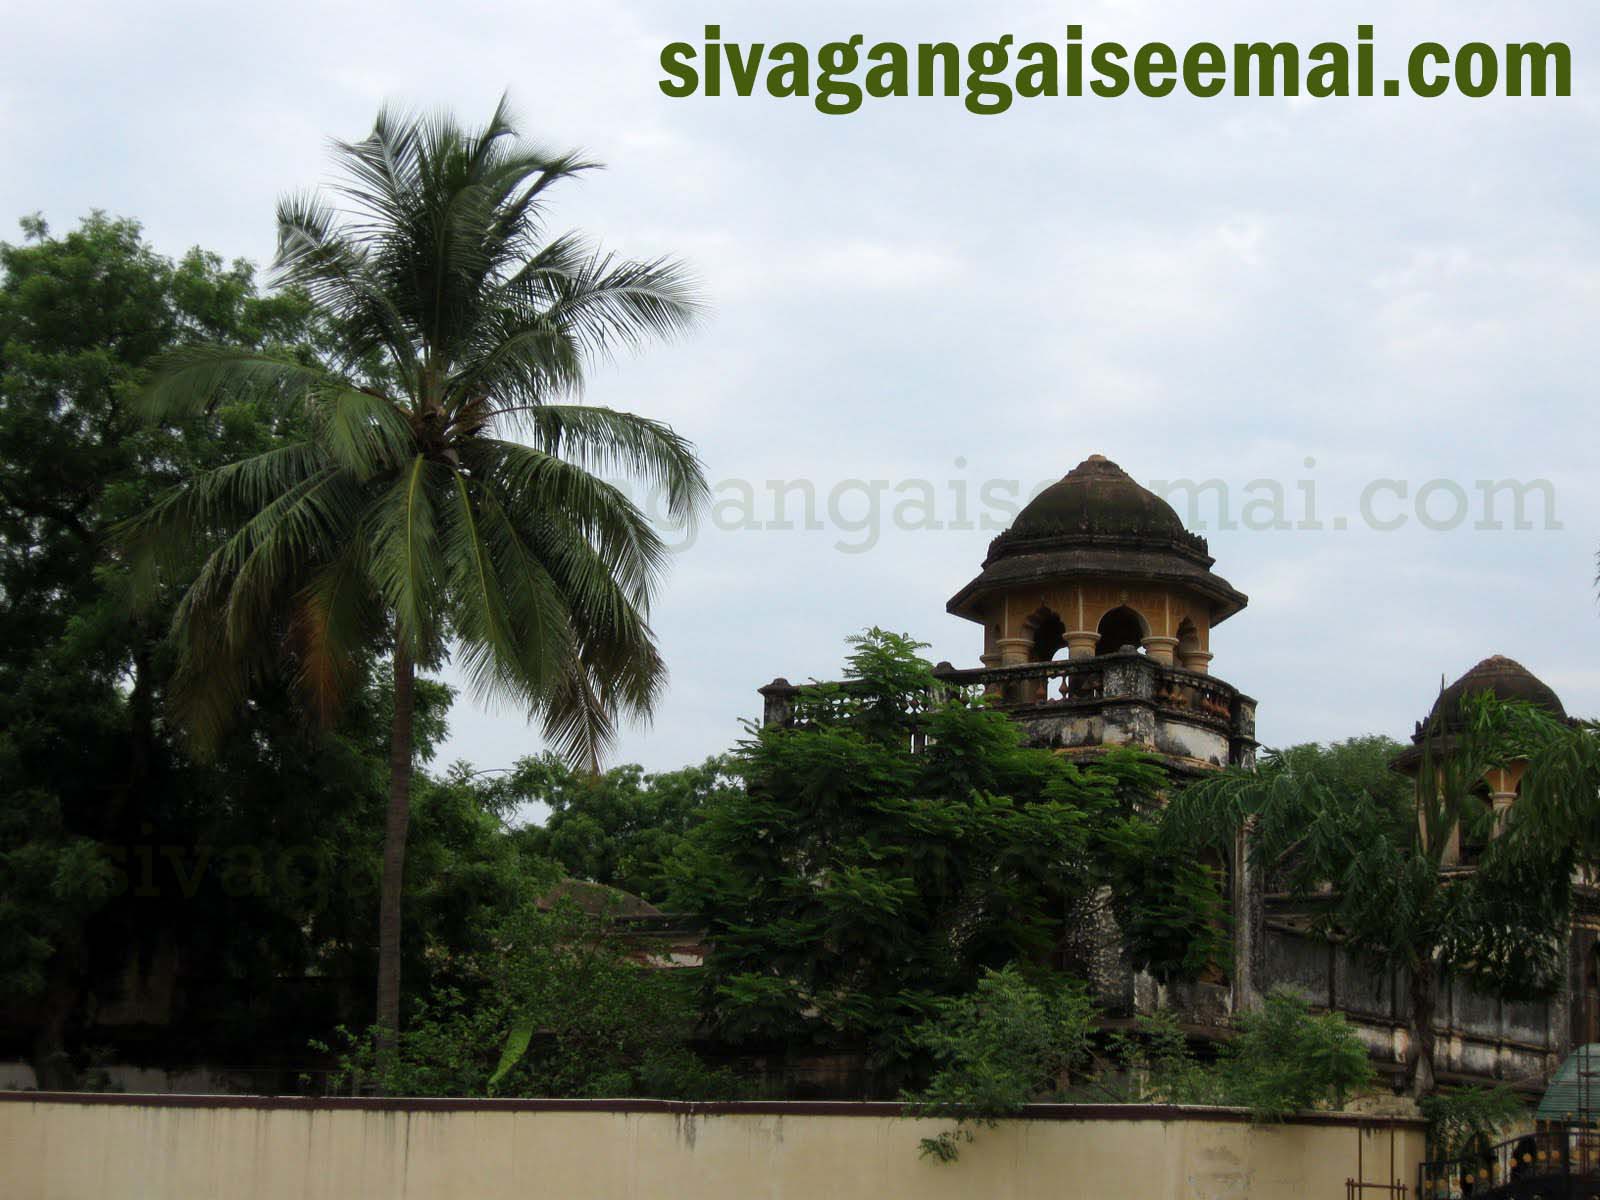 sivagangai palace photos